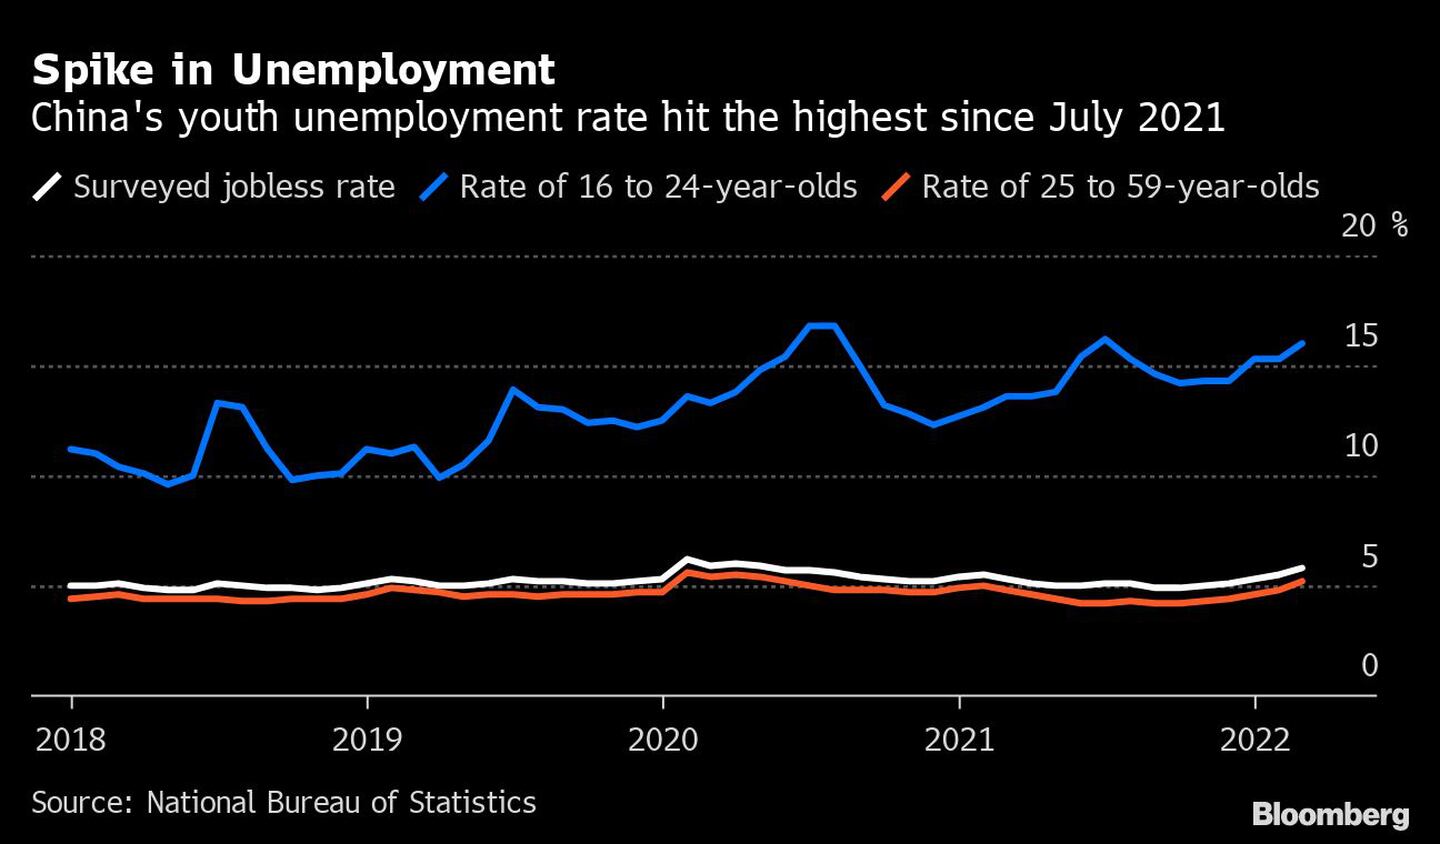 Repunte del desempleo 
La tasa de desempleo juvenil de China alcanzó el nivel más alto desde julio de 2021 
Blanco: Tasa de paro encuestado
Azul: Tasa de jóvenes de 16 a 24 años
Naranja: Tasa de 25 a 59 añosdfd